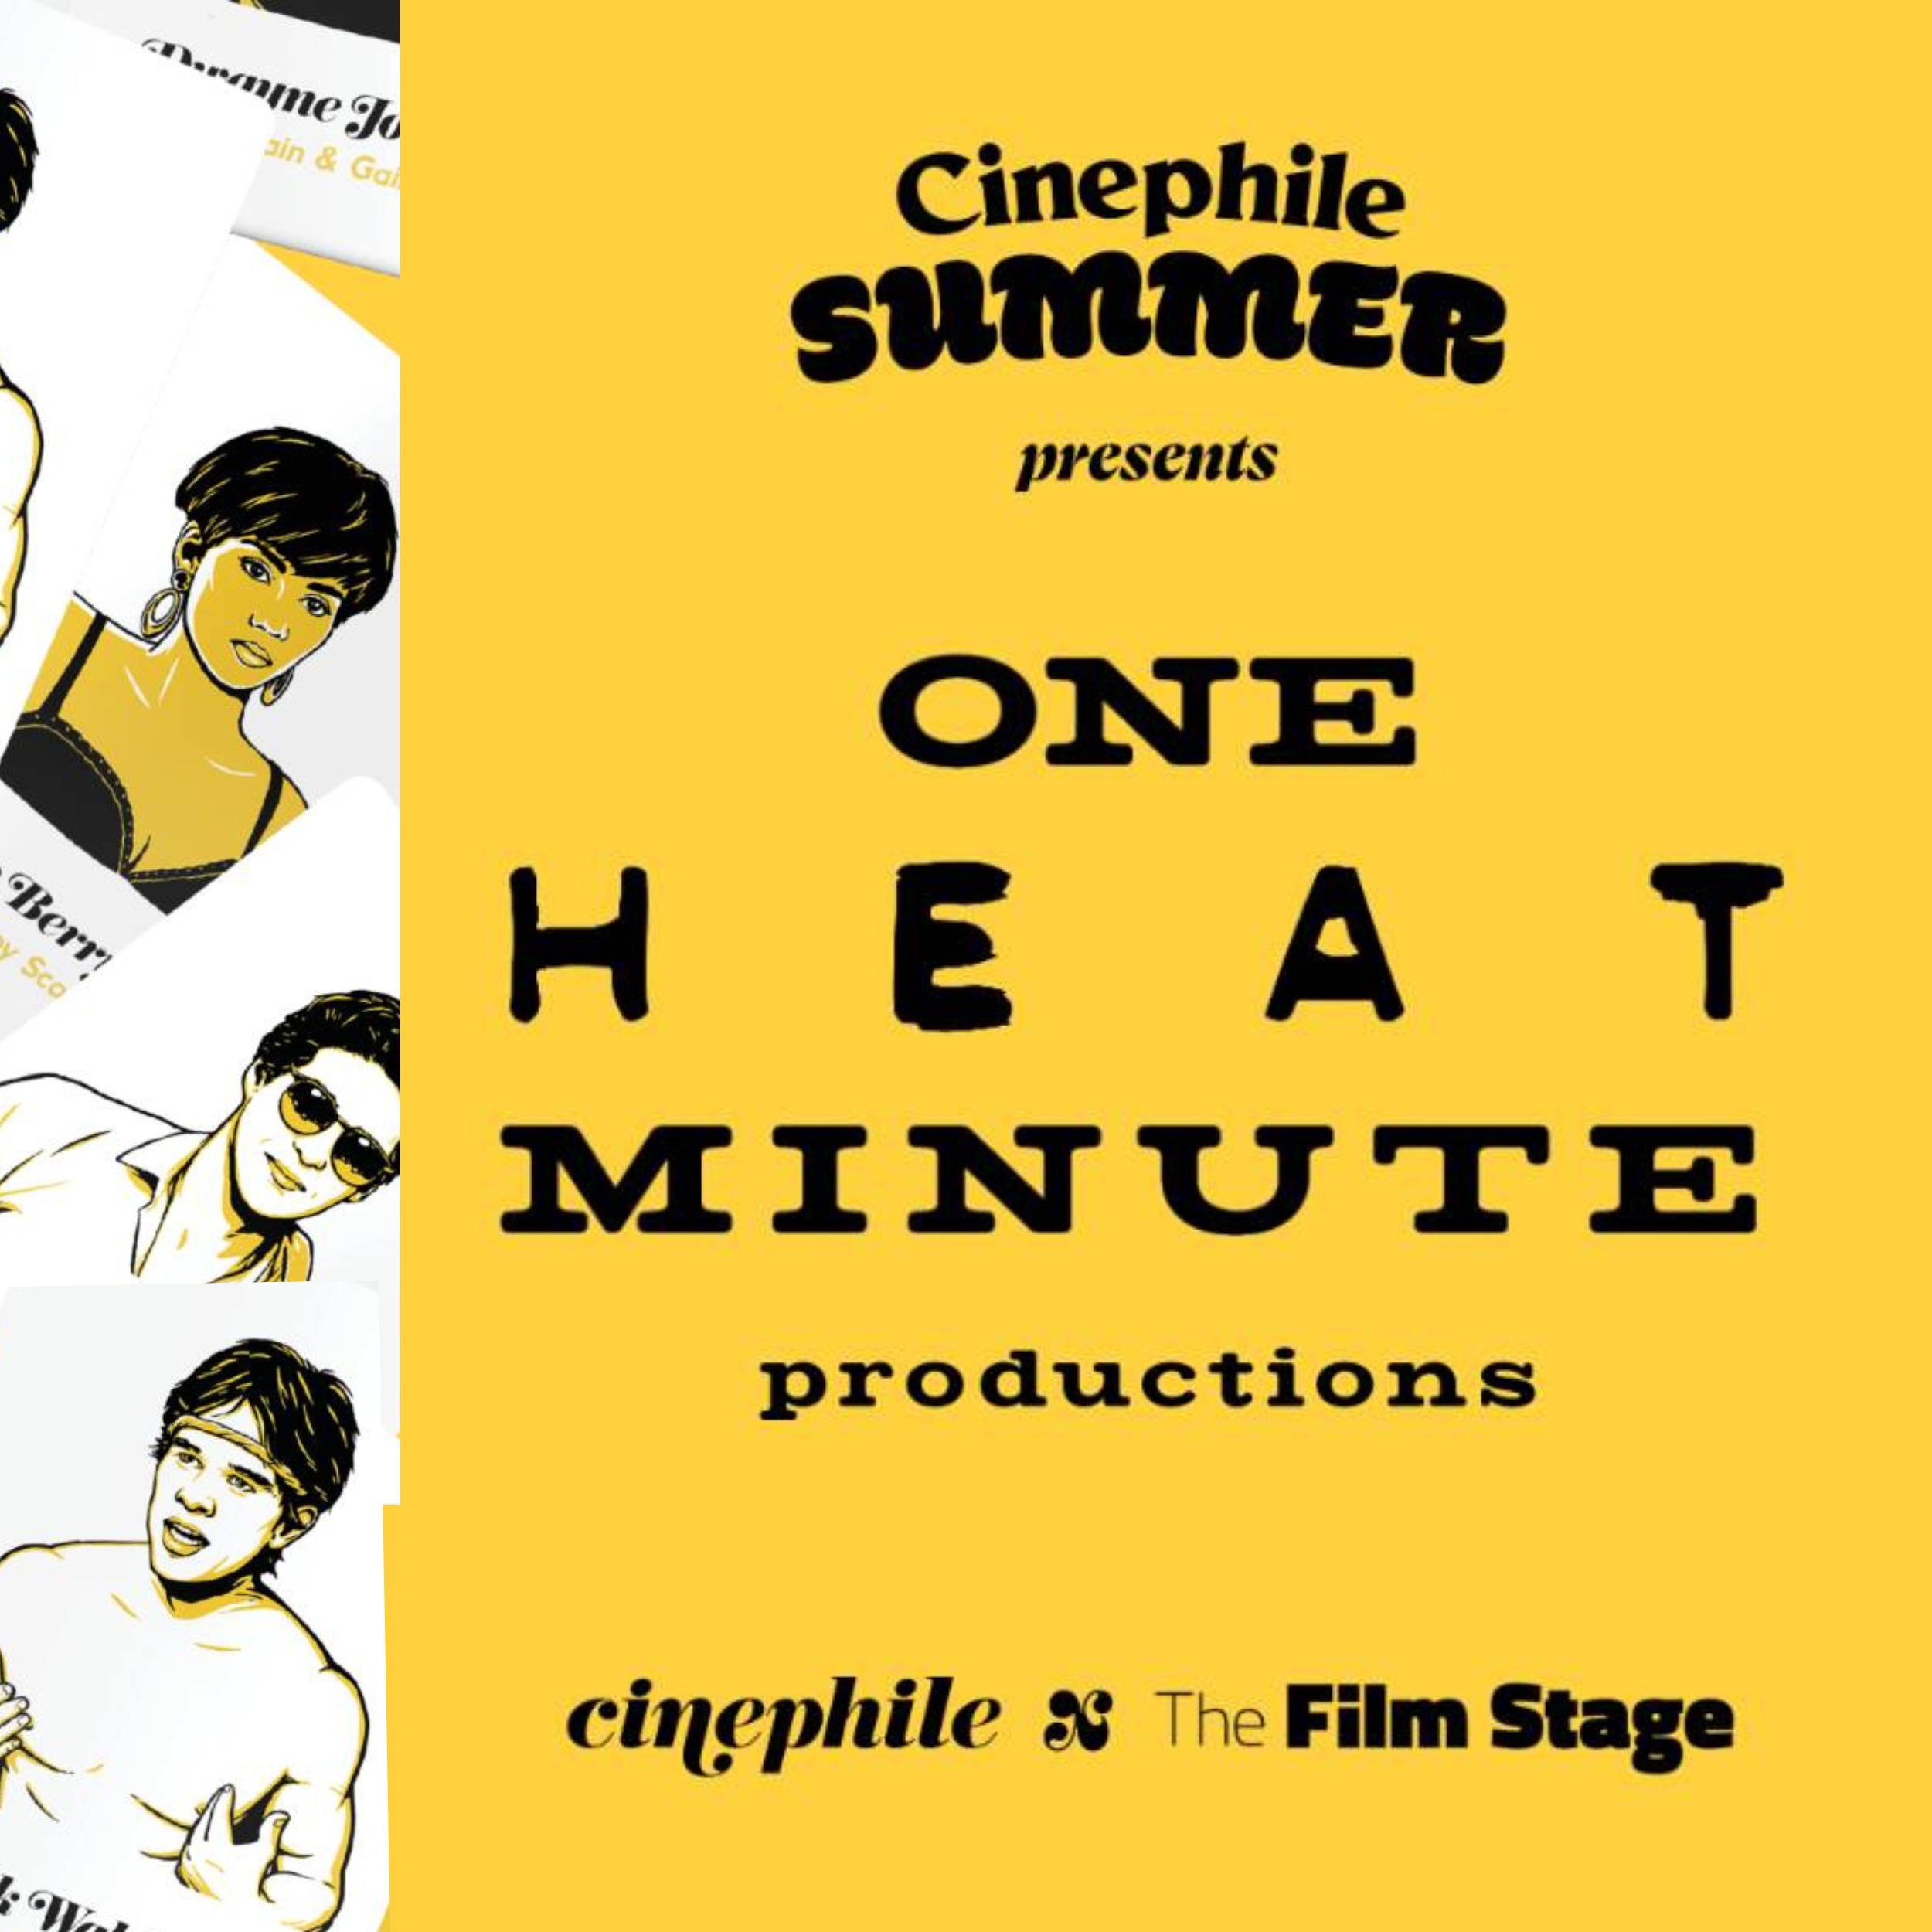 BONUS: Cinephile Summer - The Film Stage vs. One Heat Minute